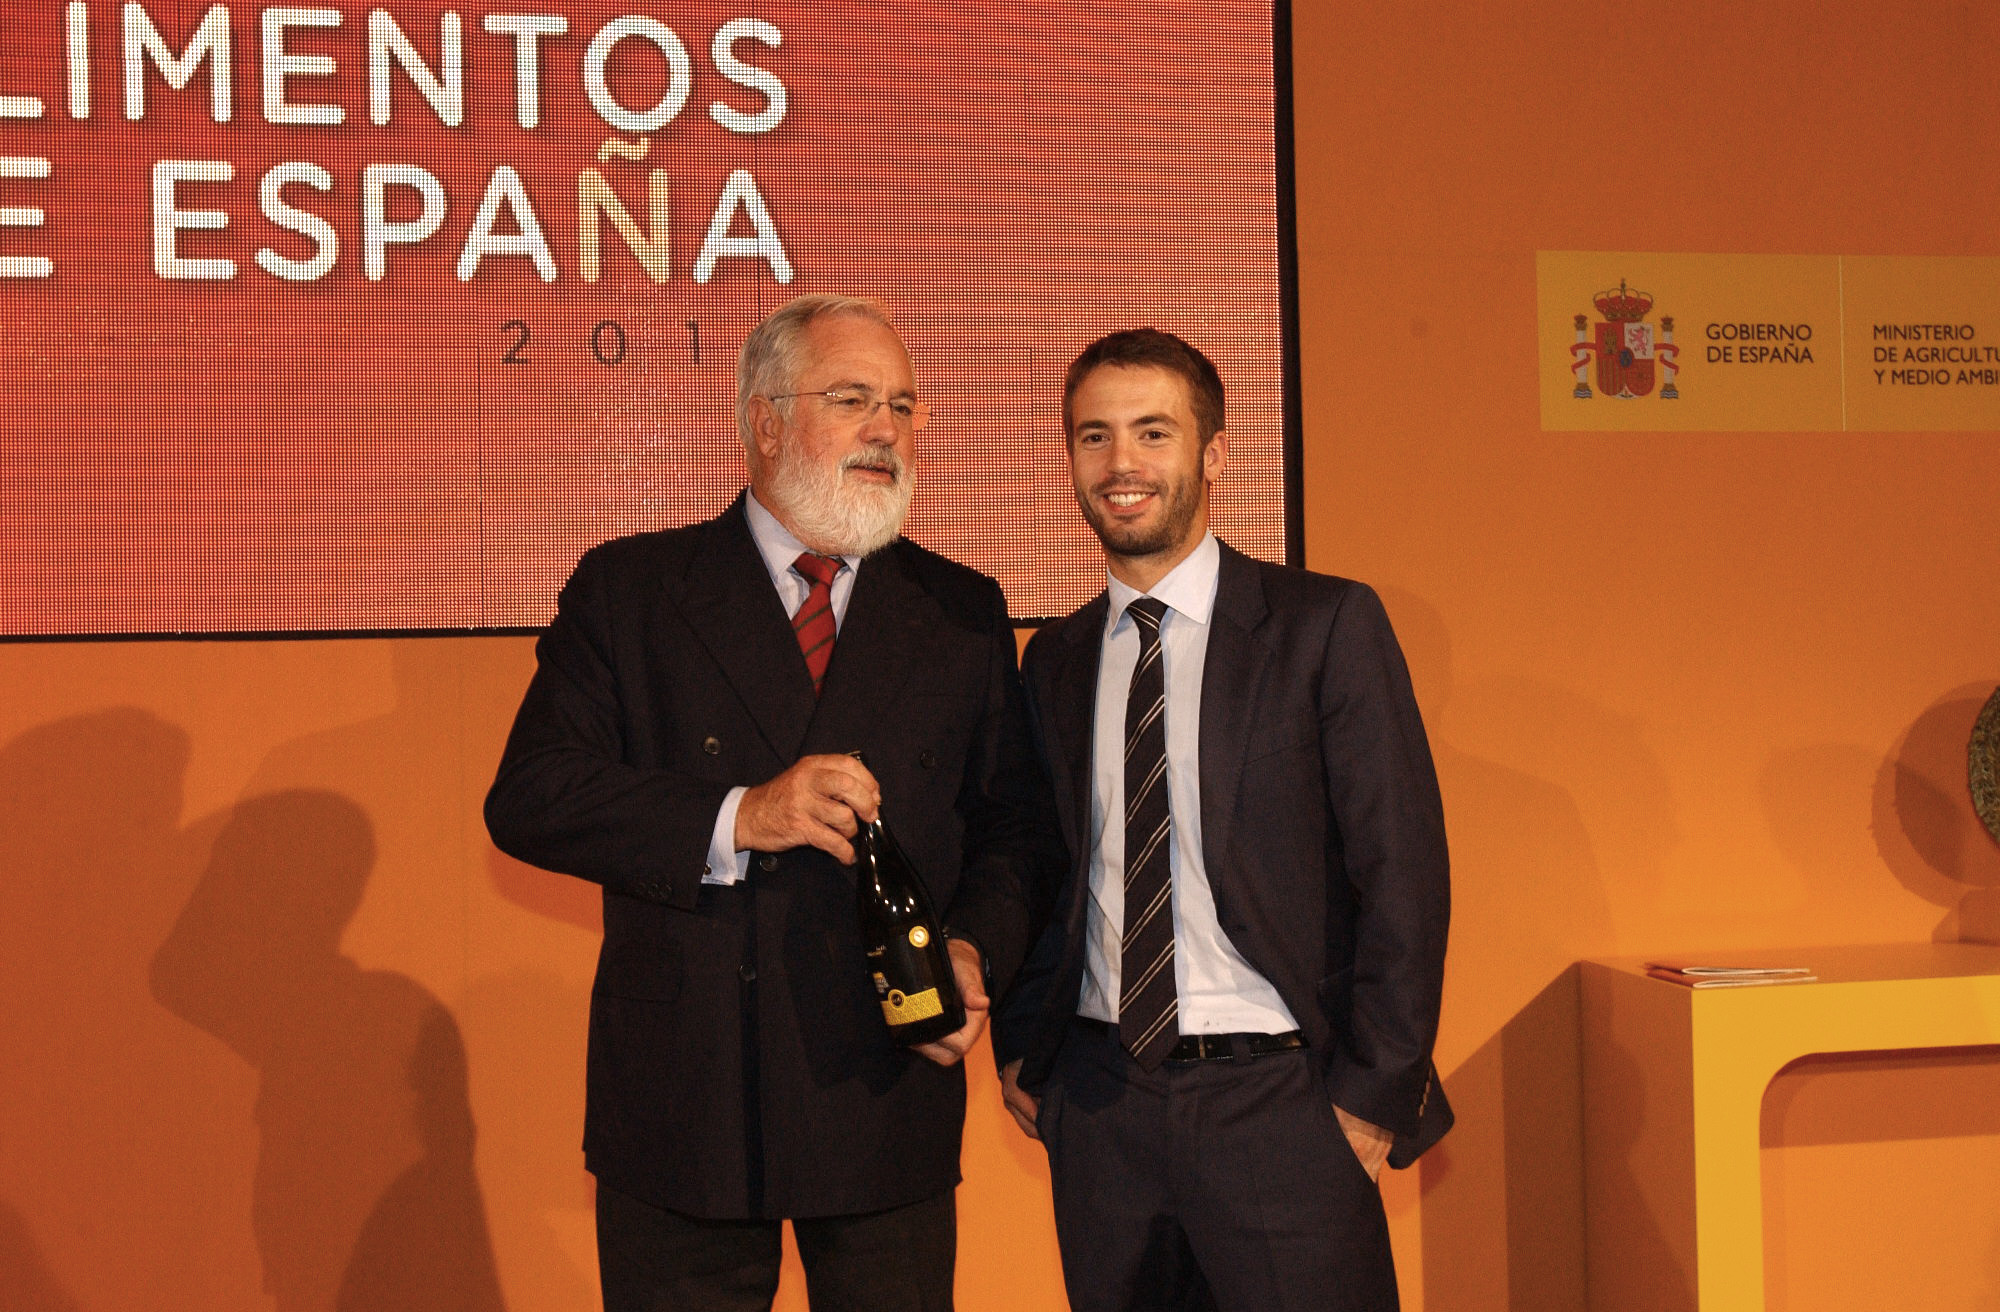 Acto de entrega do Premio Alimentos de España 2011